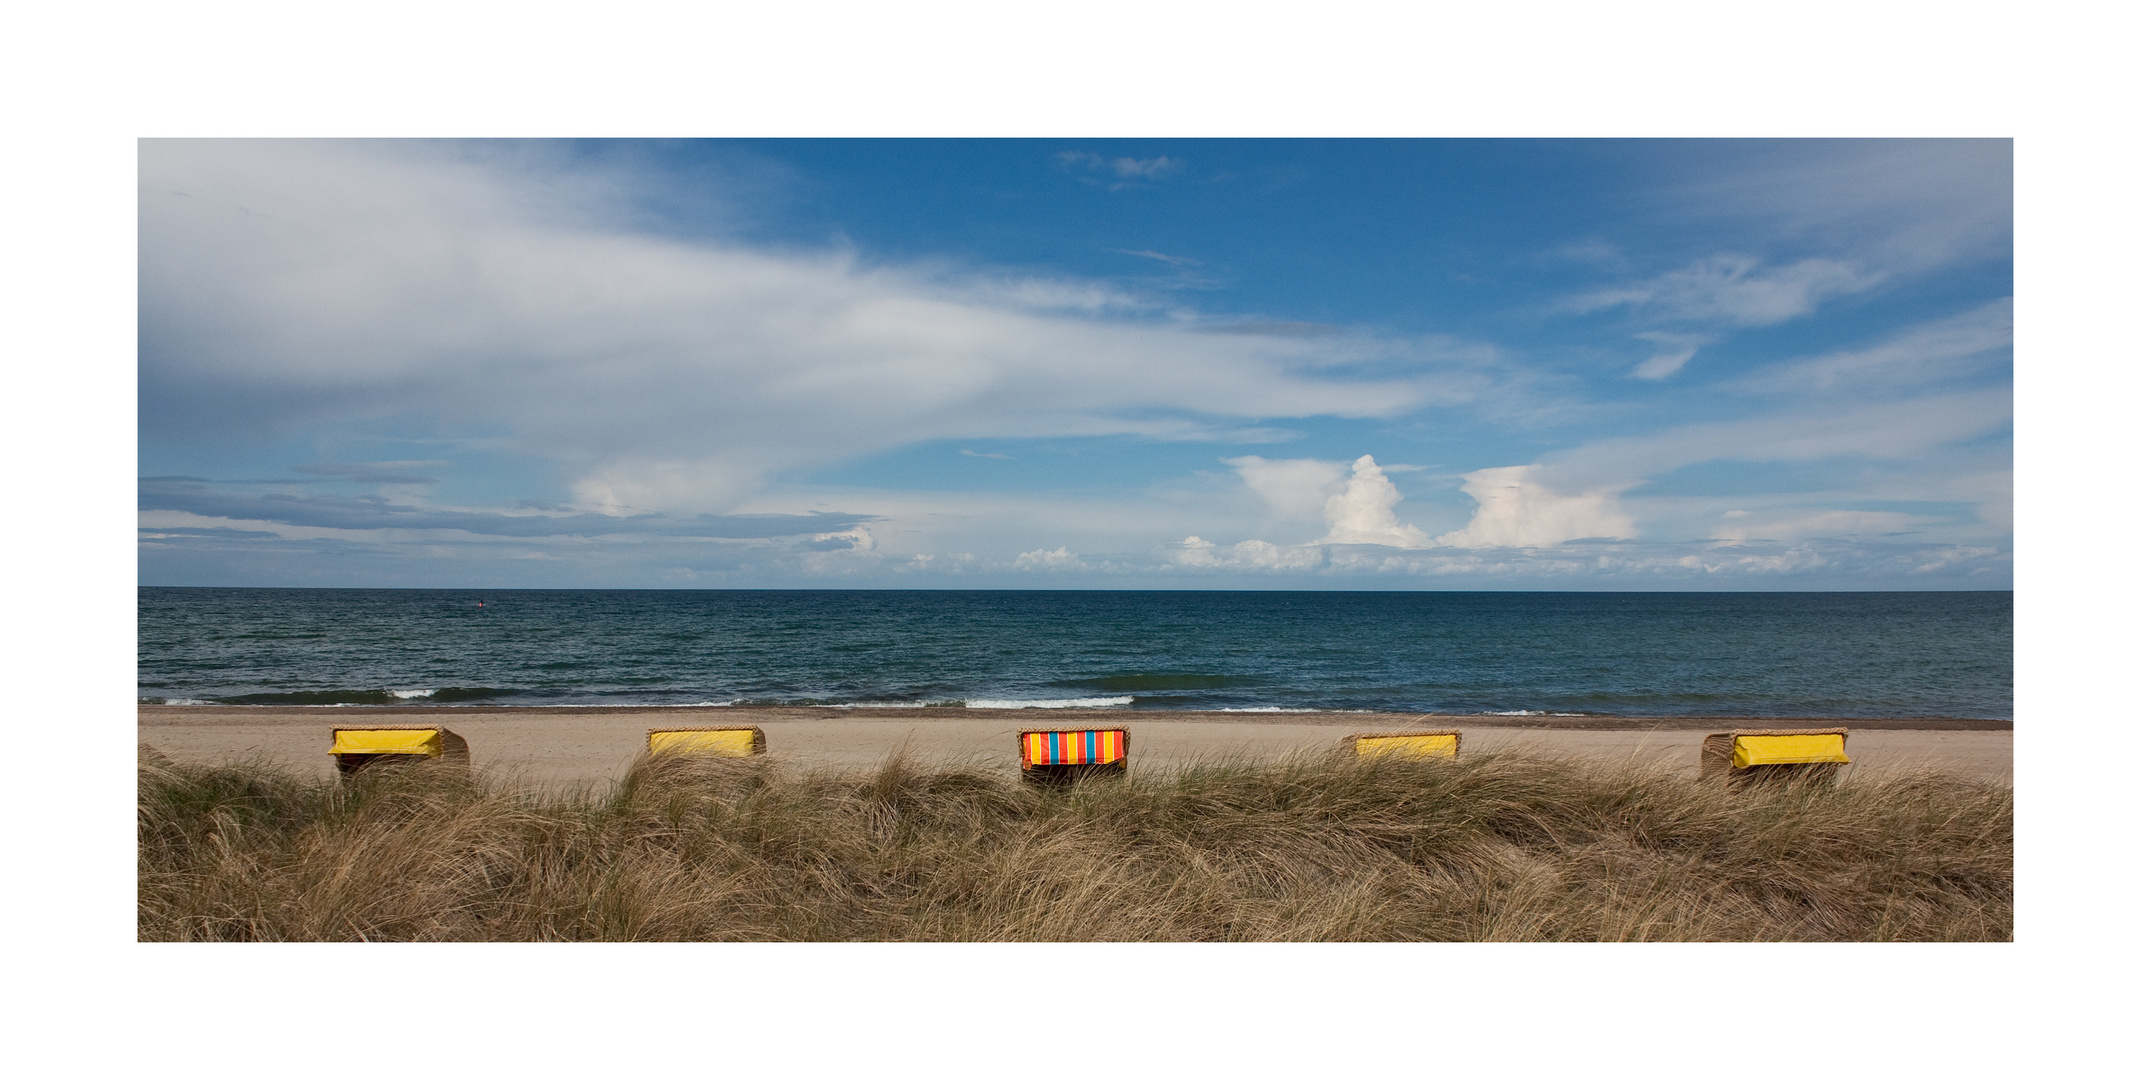 Strandkörbe an der schönen Ostseeküste